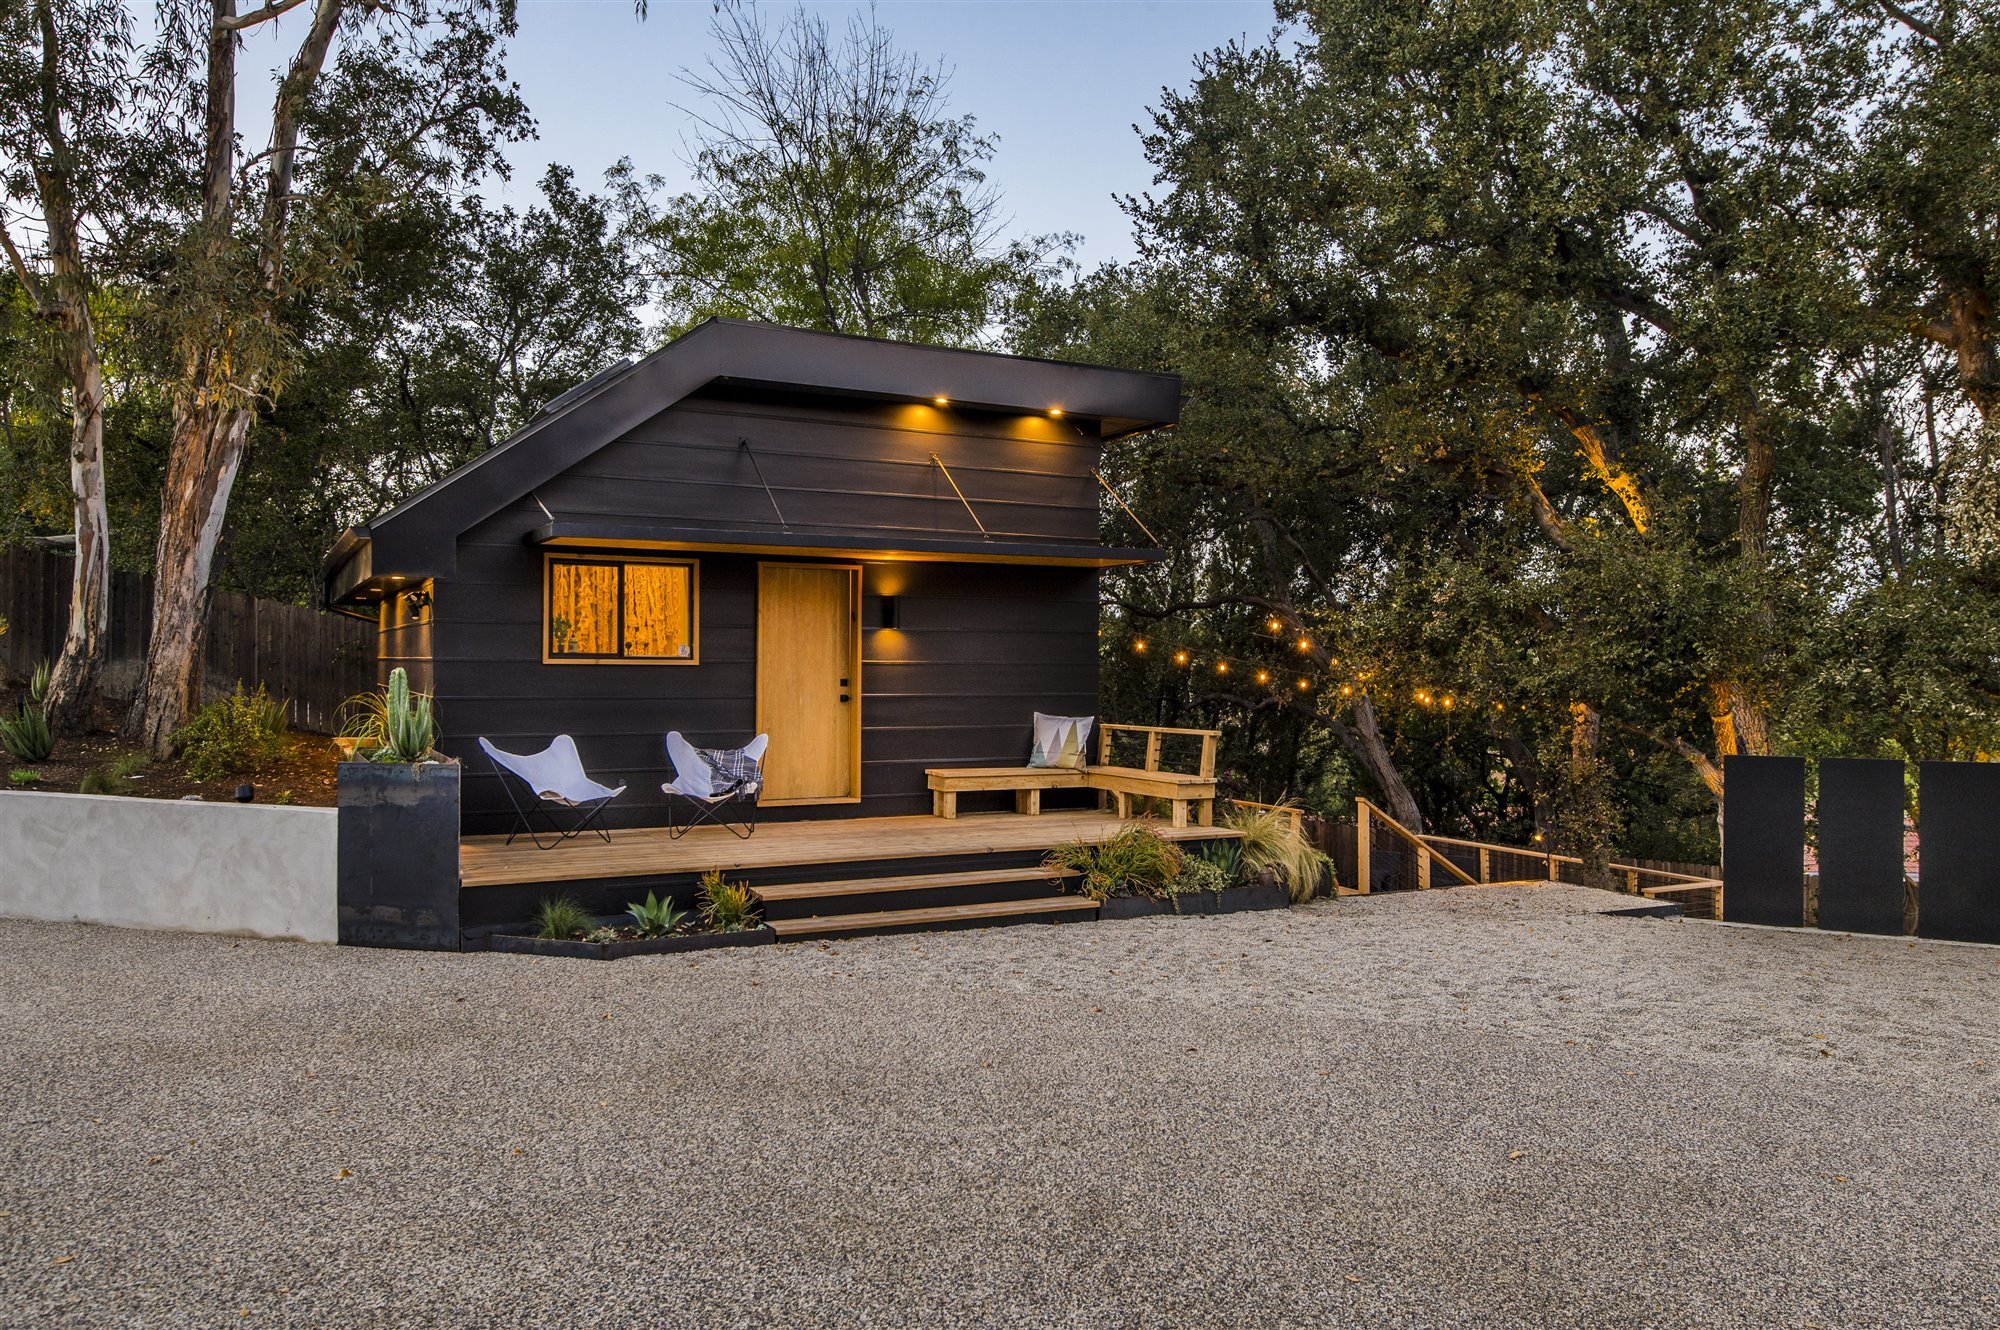 Casa moderna del actor de Modern Family Jesse Tyler Ferguson en Encino los Angeles casita de invitados